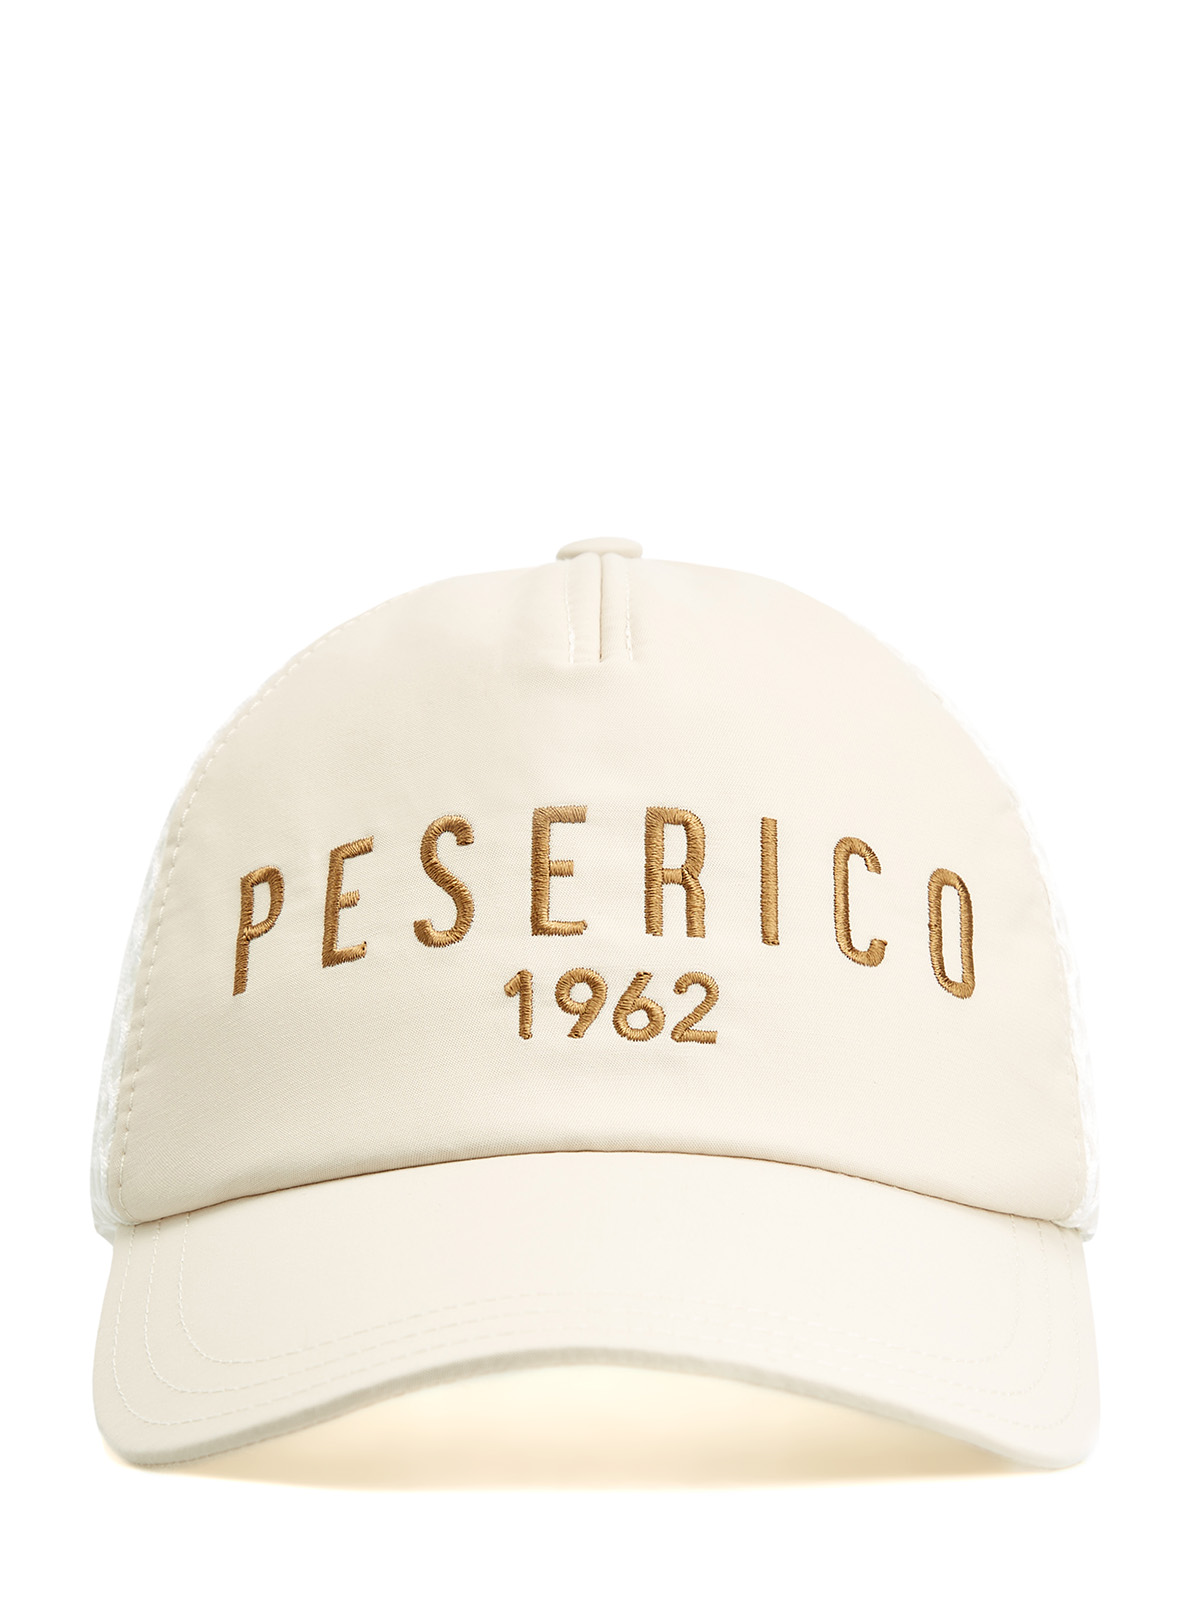 Комбинированная бейсболка с сетчатой вставкой и объемной вышивкой PESERICO, цвет бежевый, размер 37;37.5;38;38.5;39.5;40